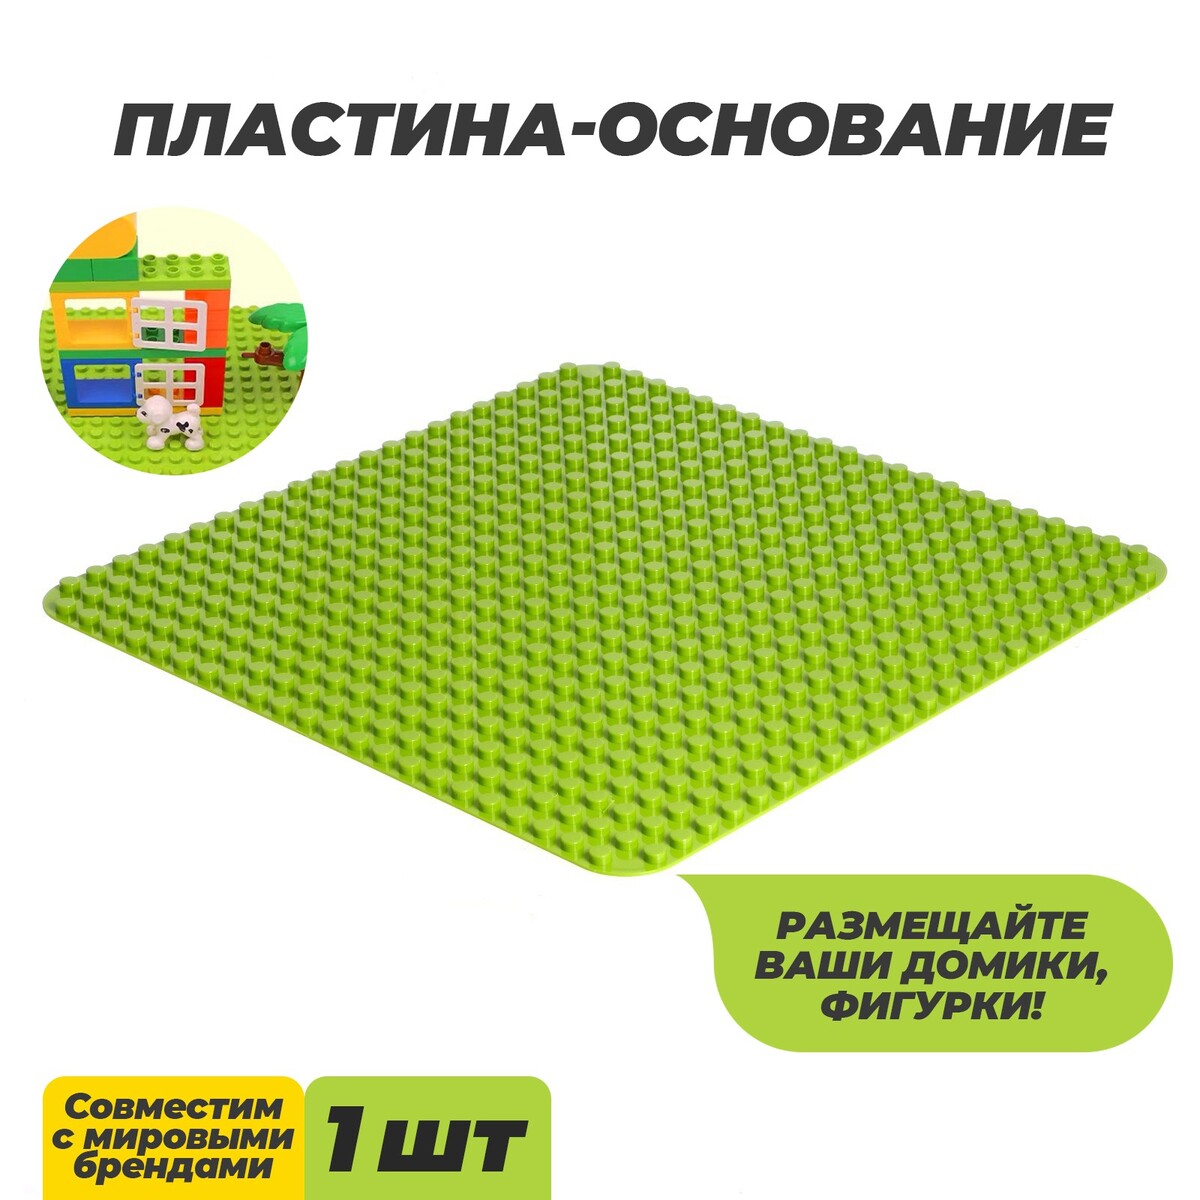 Пластина-основание для конструктора, 38,4 × 38,4 см, цвет салатовый пластина основание для конструктора 40 × 40 см салатовый